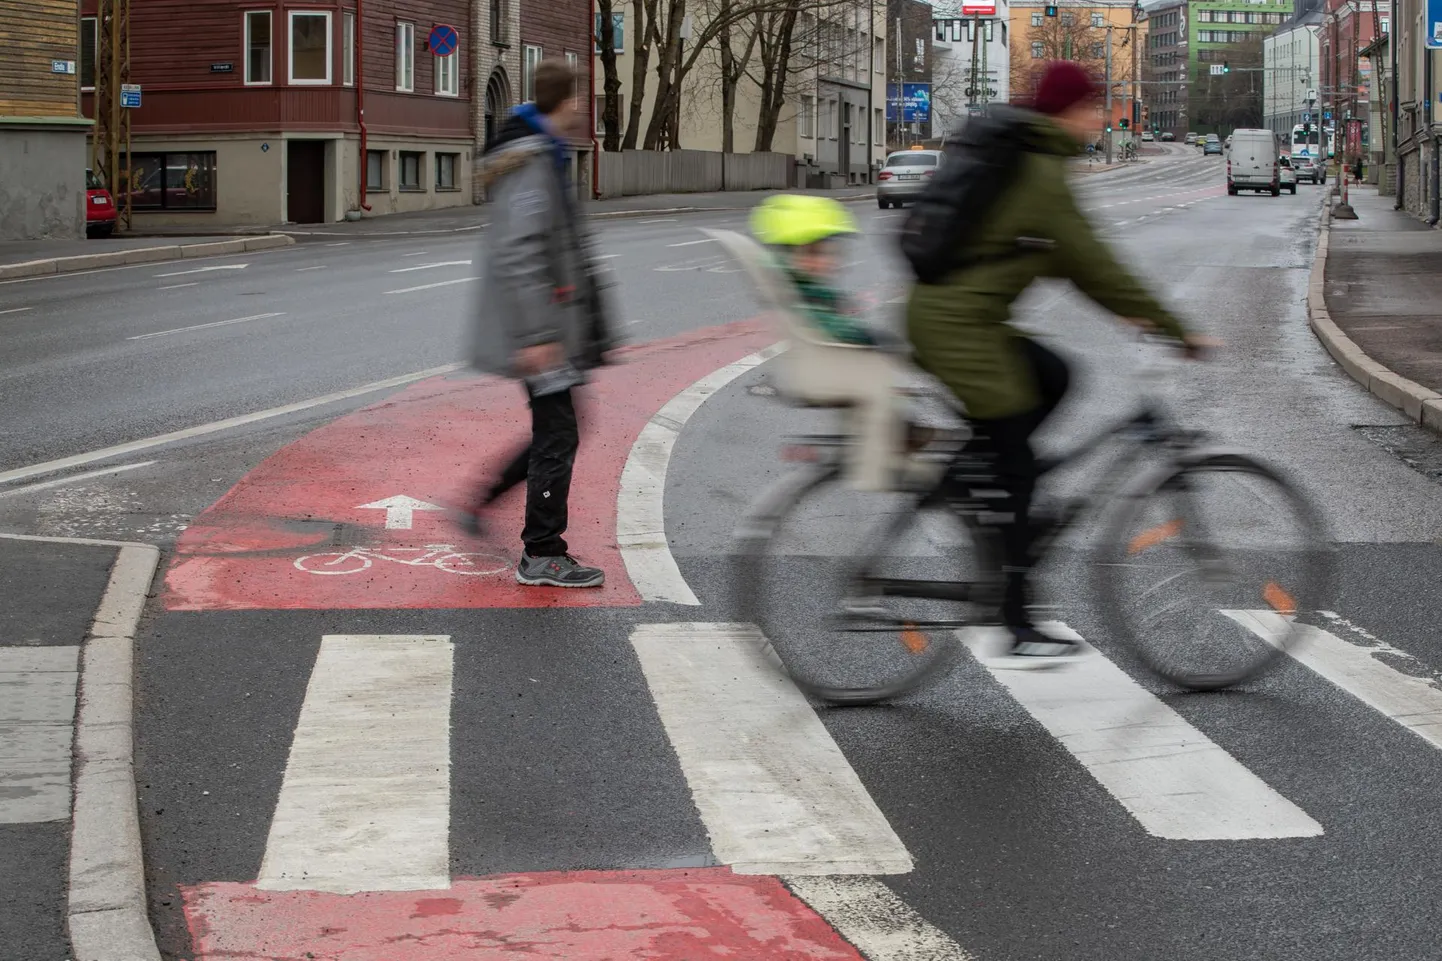 Endla tänav enne Suur-Ameerika tänava algust saab nii punase värvkatte kui ka füüsilised eraldajad, sest tegemist on jalgratturite jaoks väga ohtliku kohaga.

 